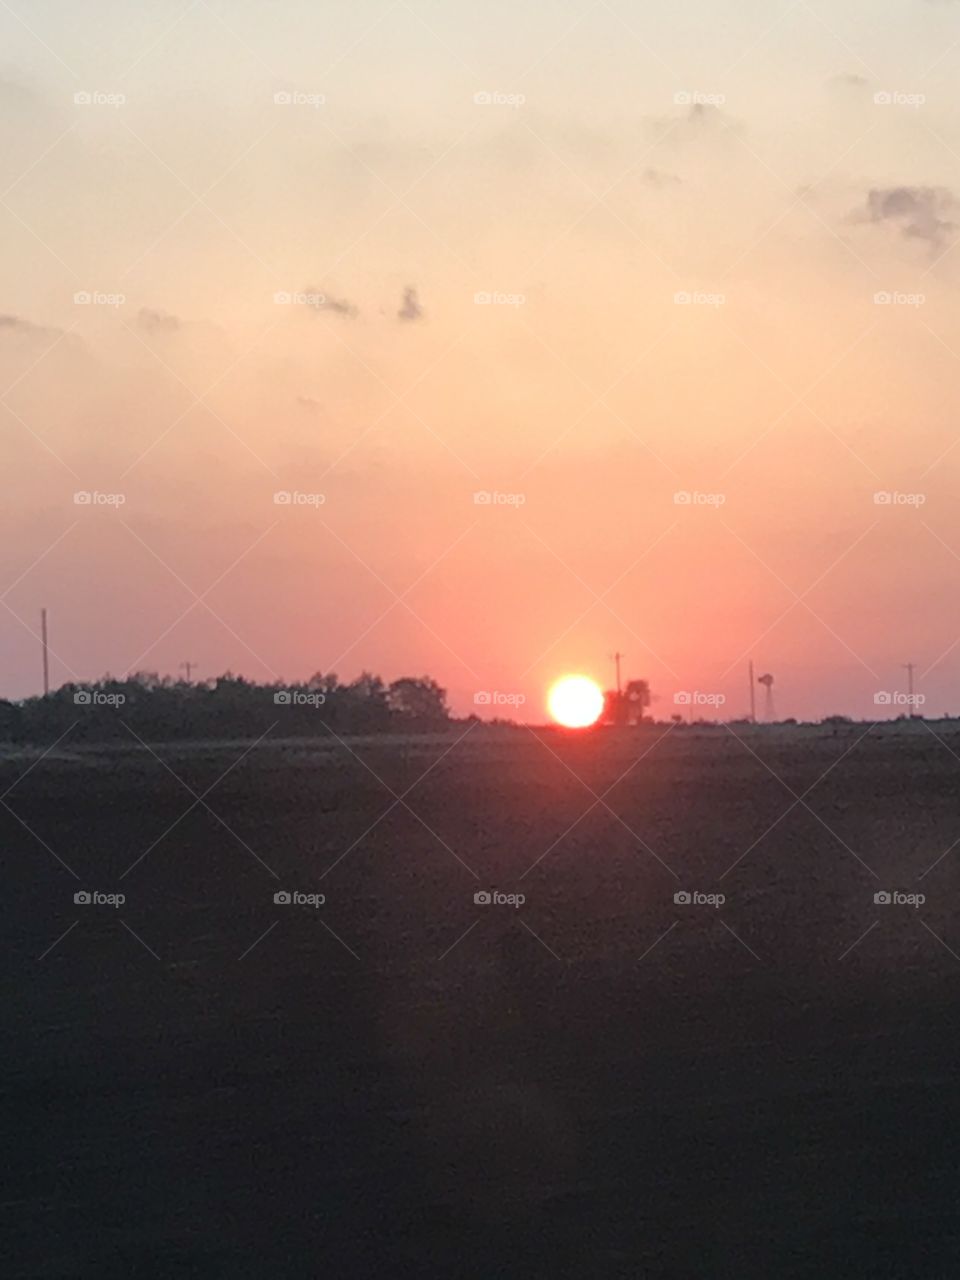 Sunrises in north Texas 